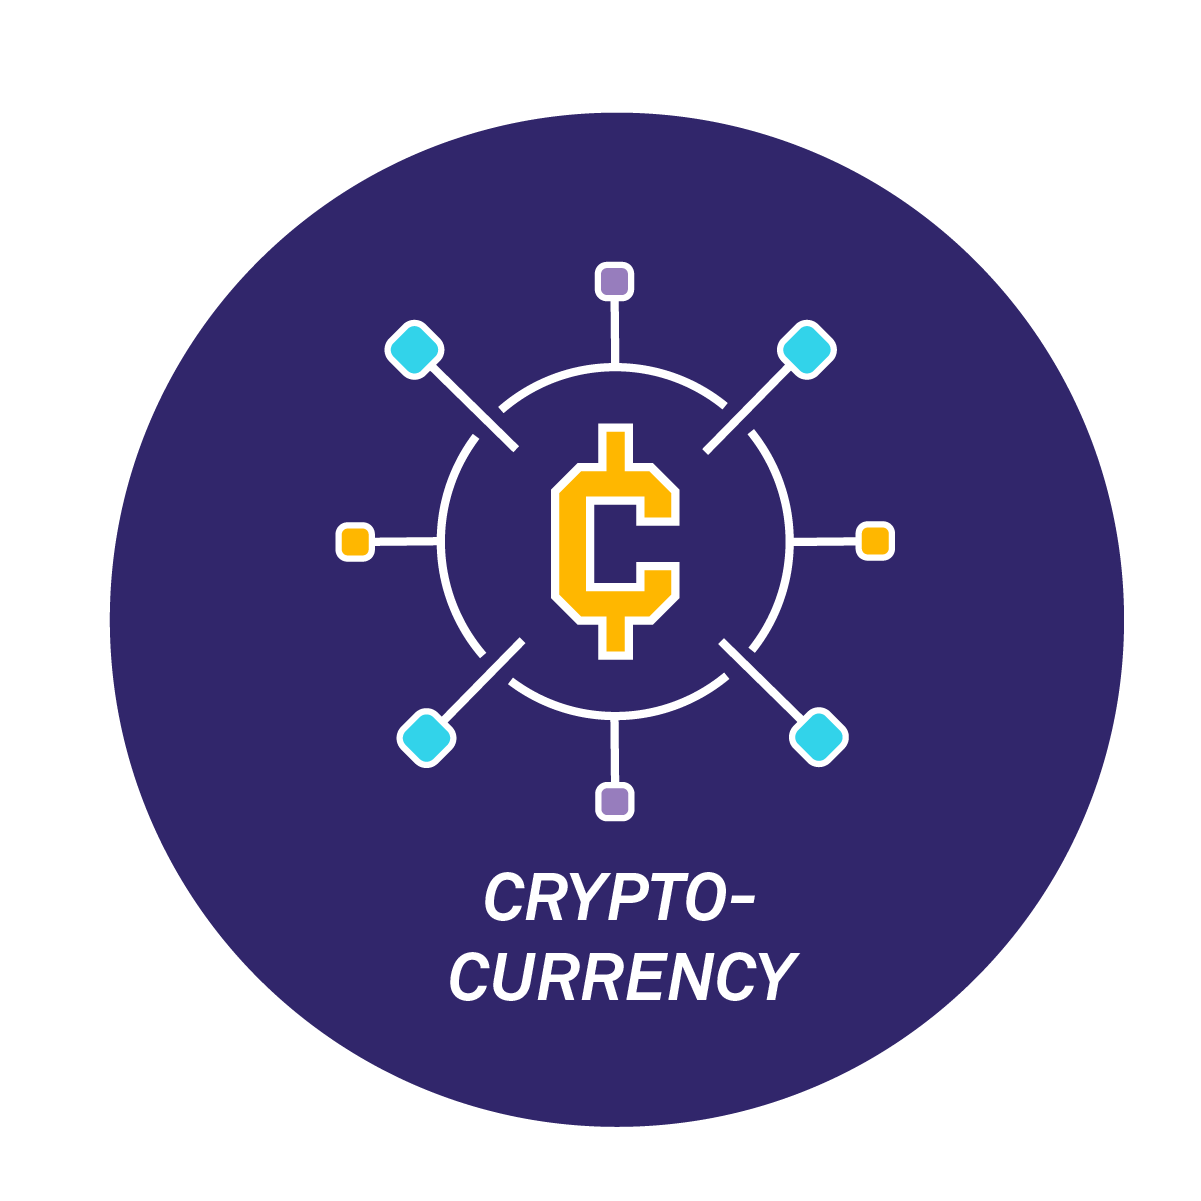 Crypto Icon